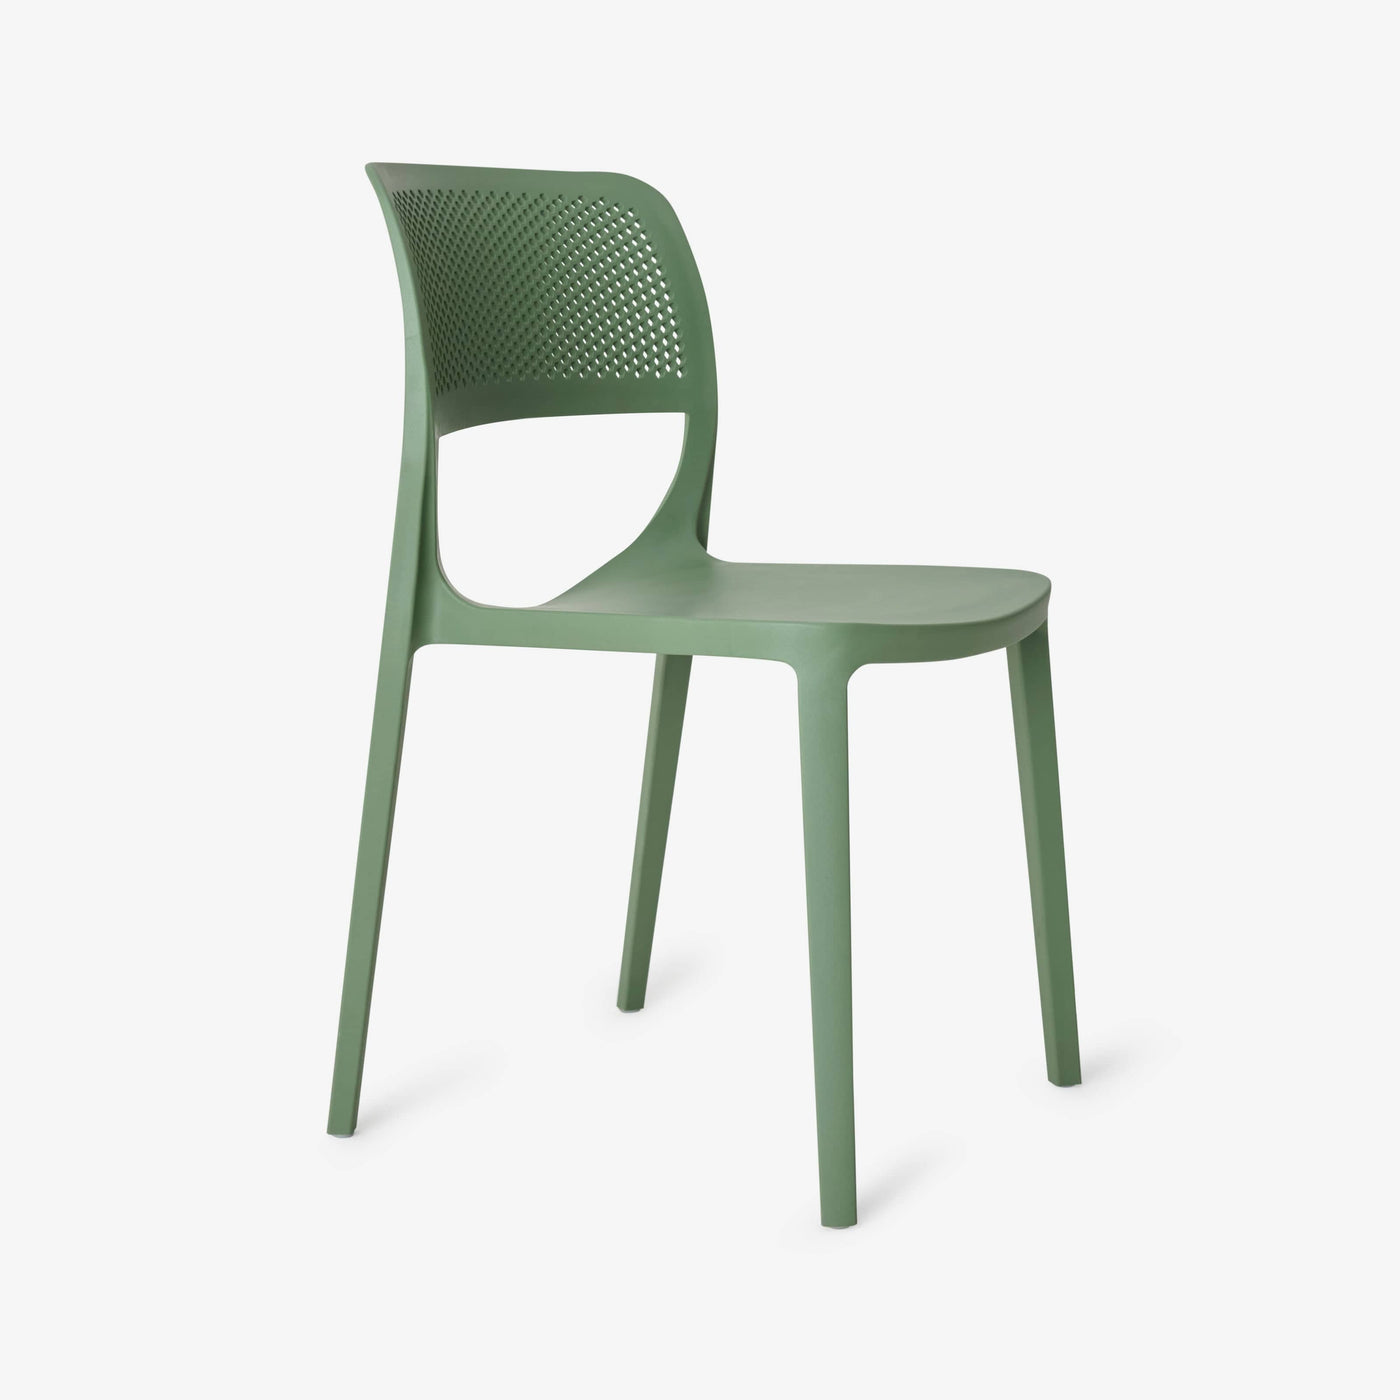 Siena Fiberglass Garden Chair, Green - 2